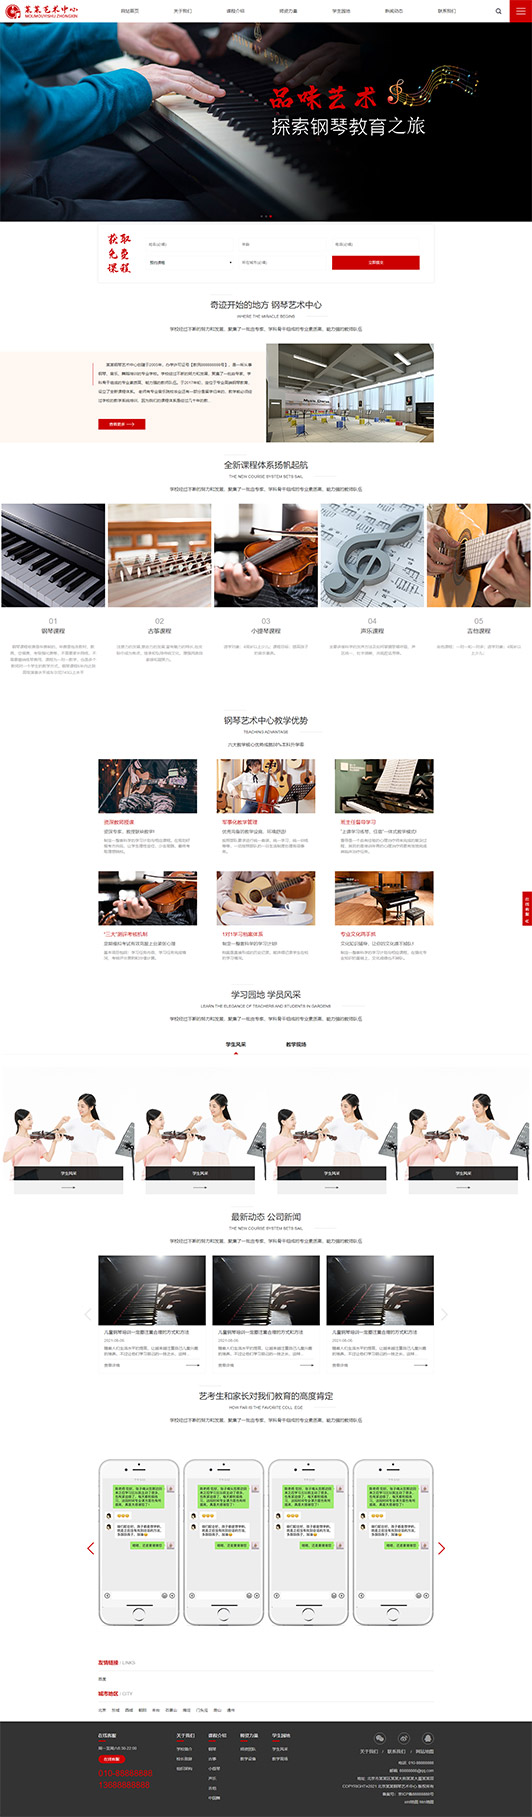 海北钢琴艺术培训公司响应式企业网站